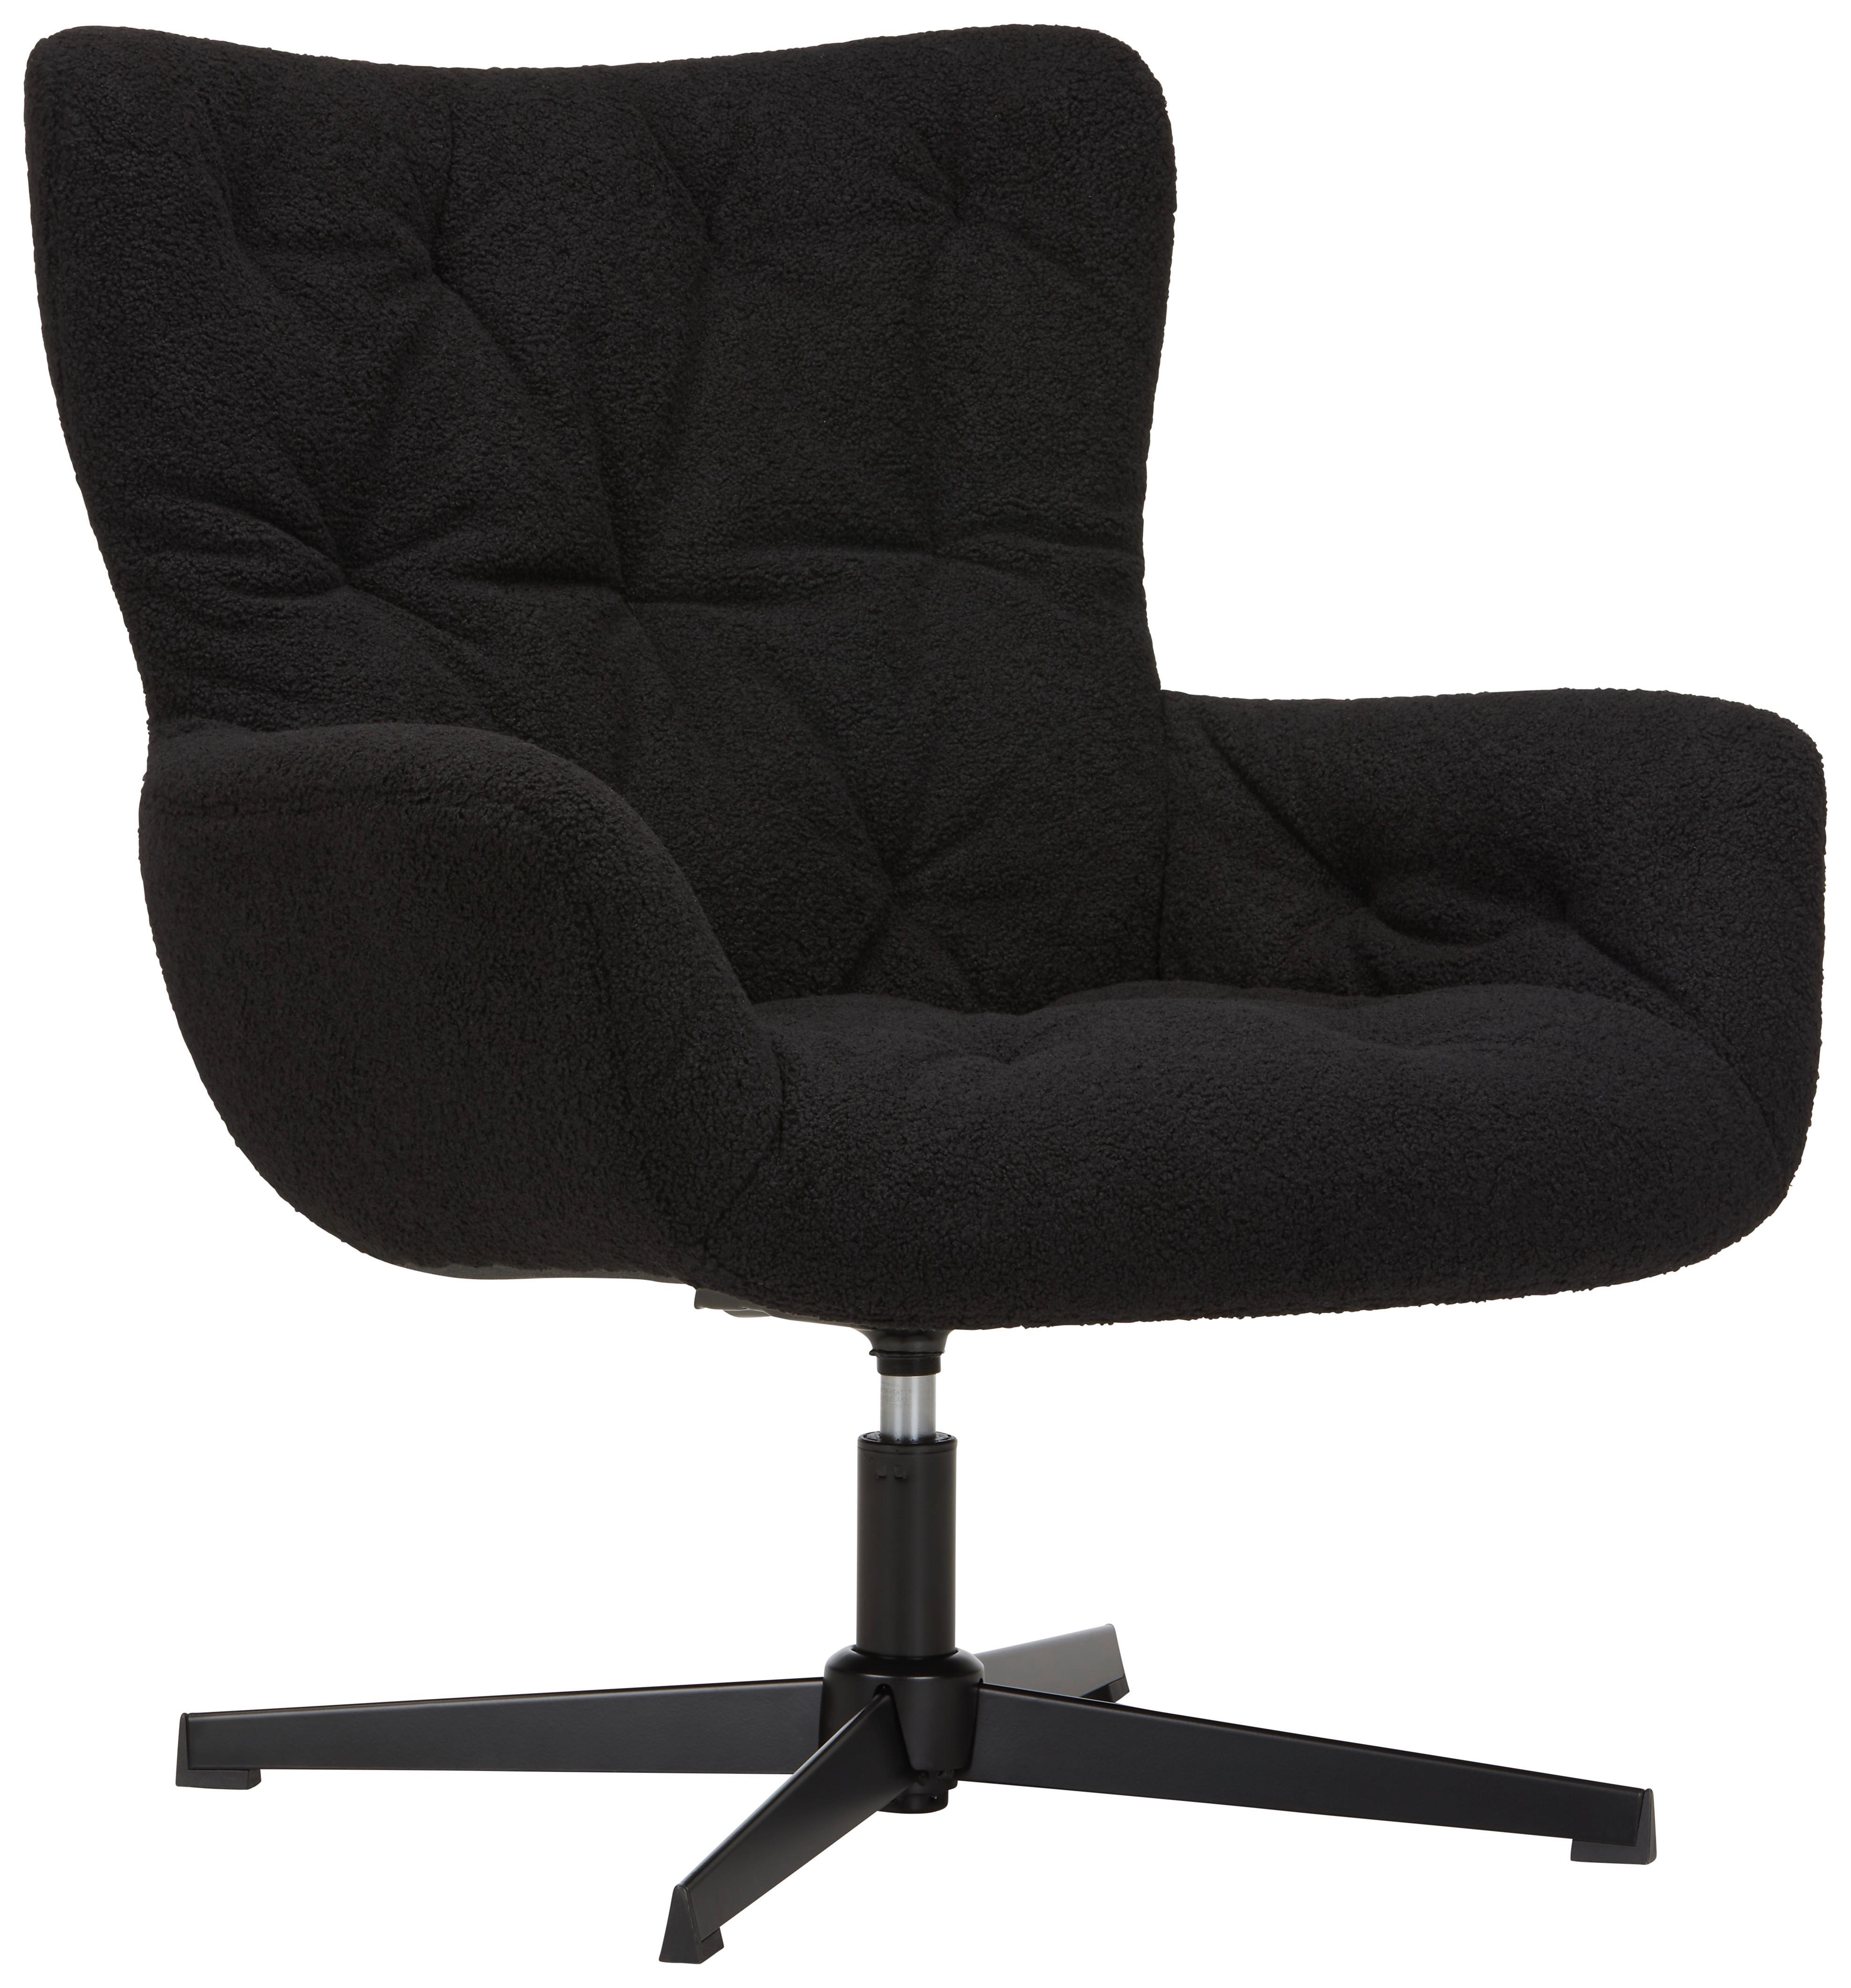 Vrtljivi Stol Lounge -Trend- - črna, Moderno, kovina/tekstil (85cm) - Premium Living